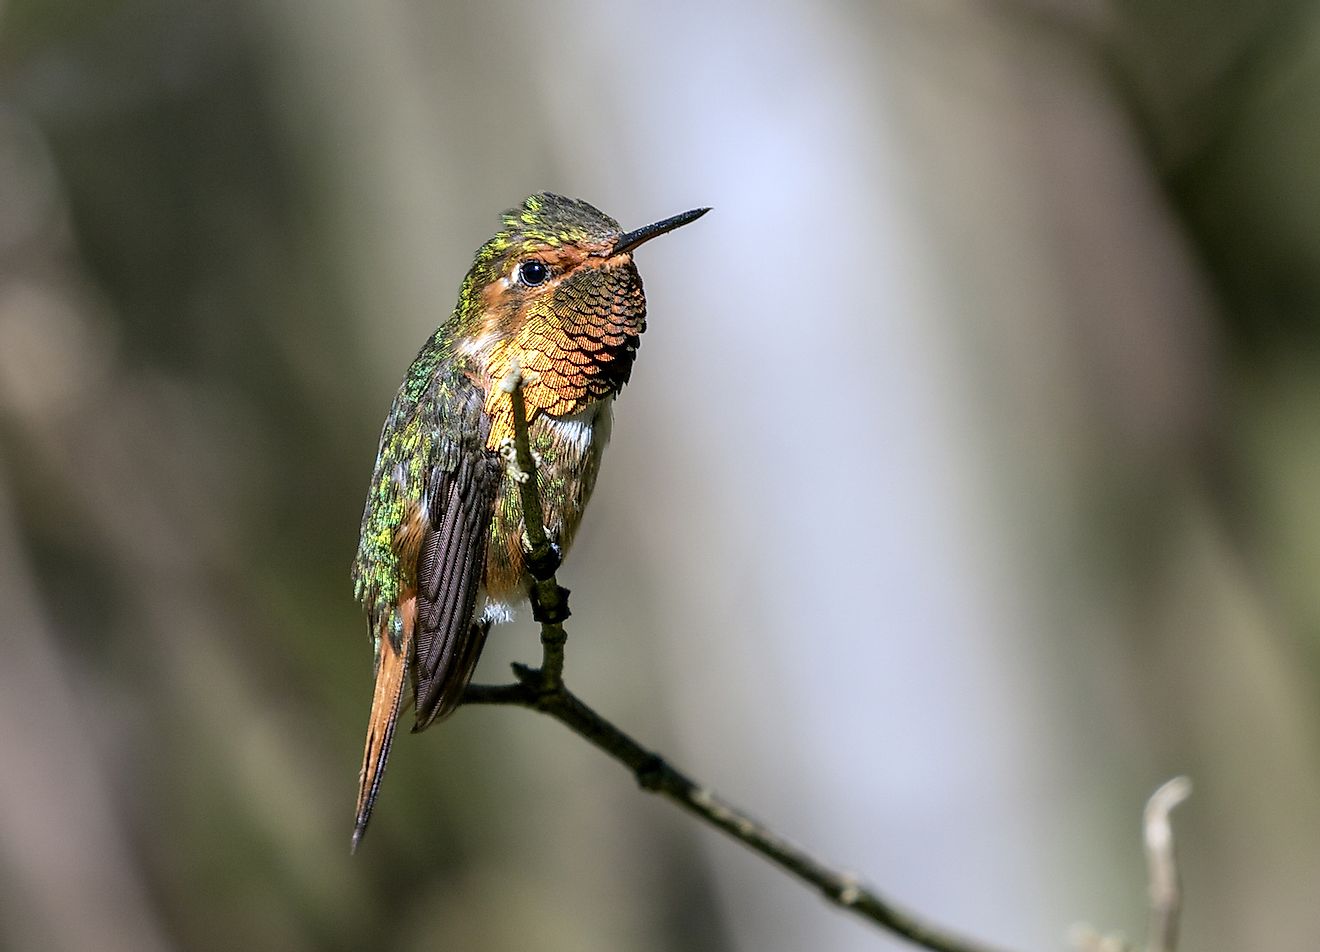 Scintillant Hummingbird. Image credit: Scintillant Hummingbird/Shutterstock.com